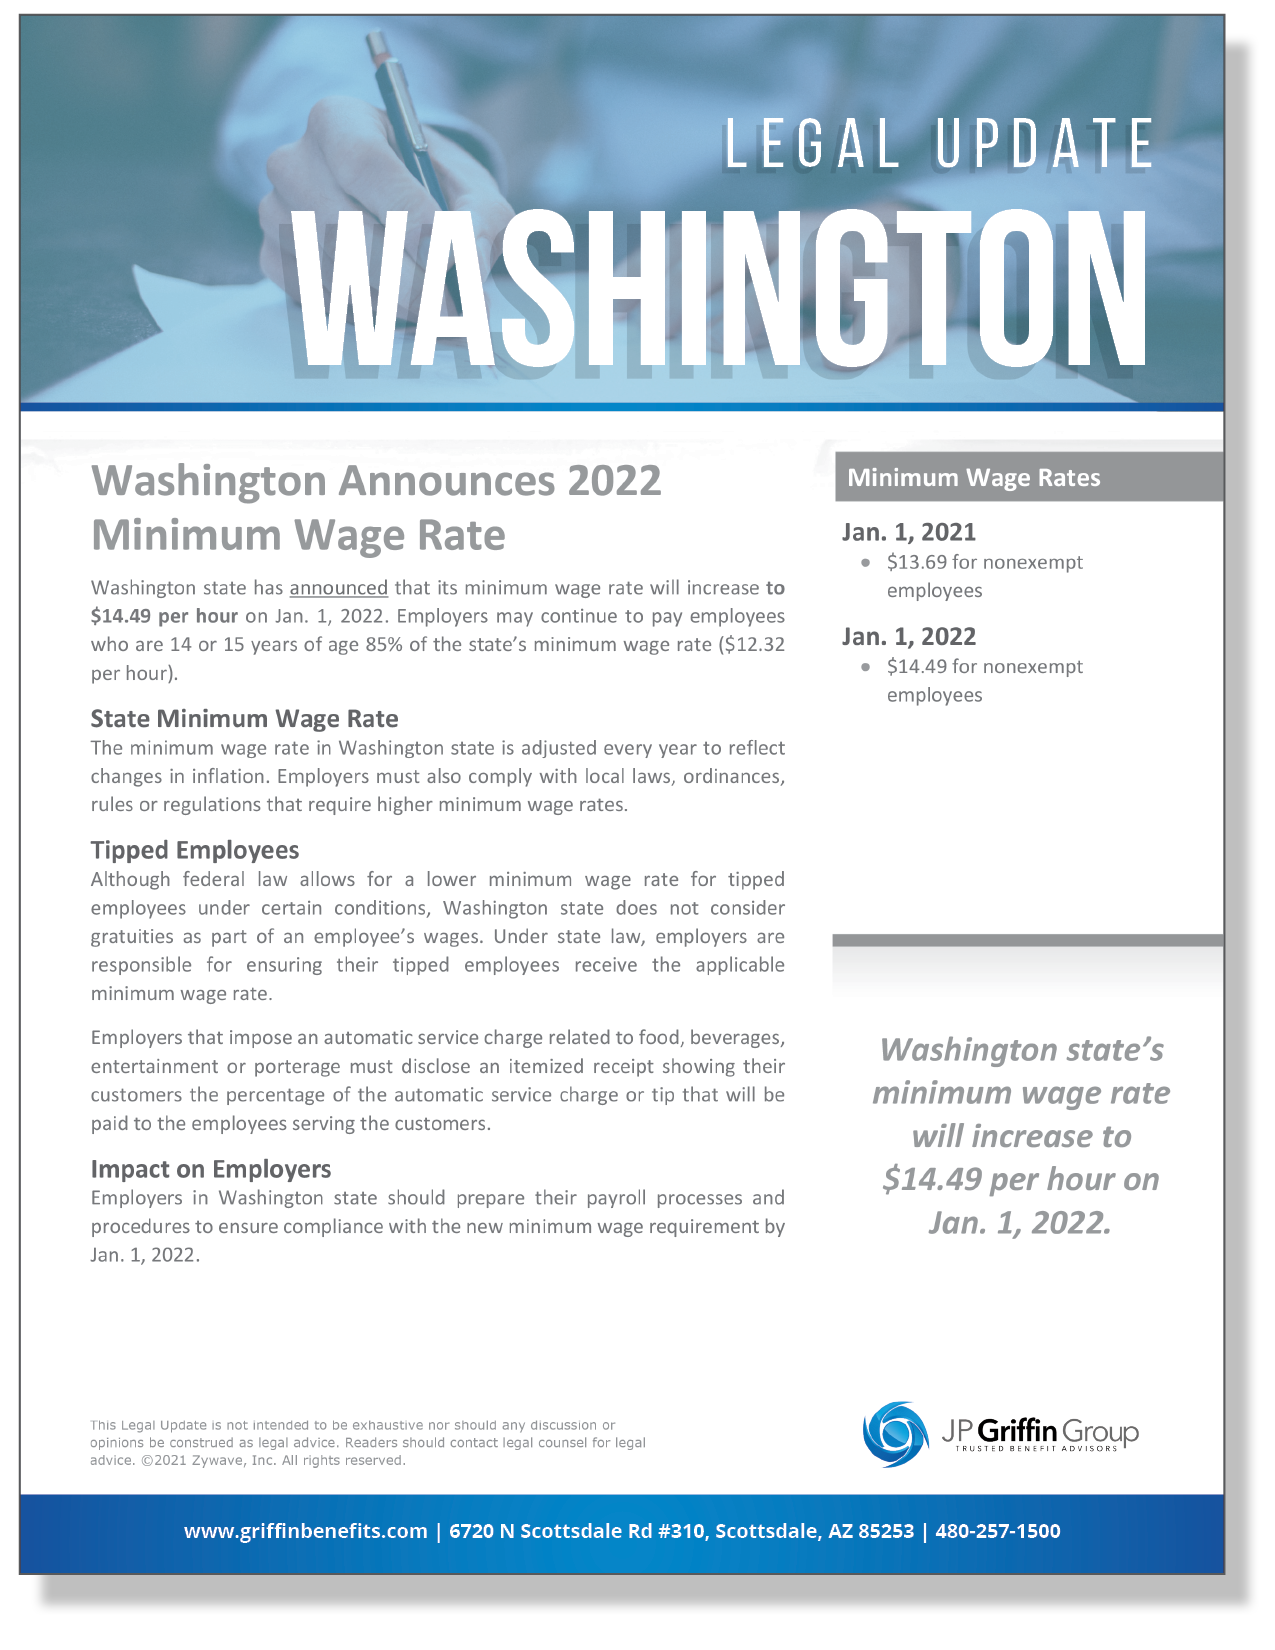 Washington Announces 2022 Minimum Wage Rate